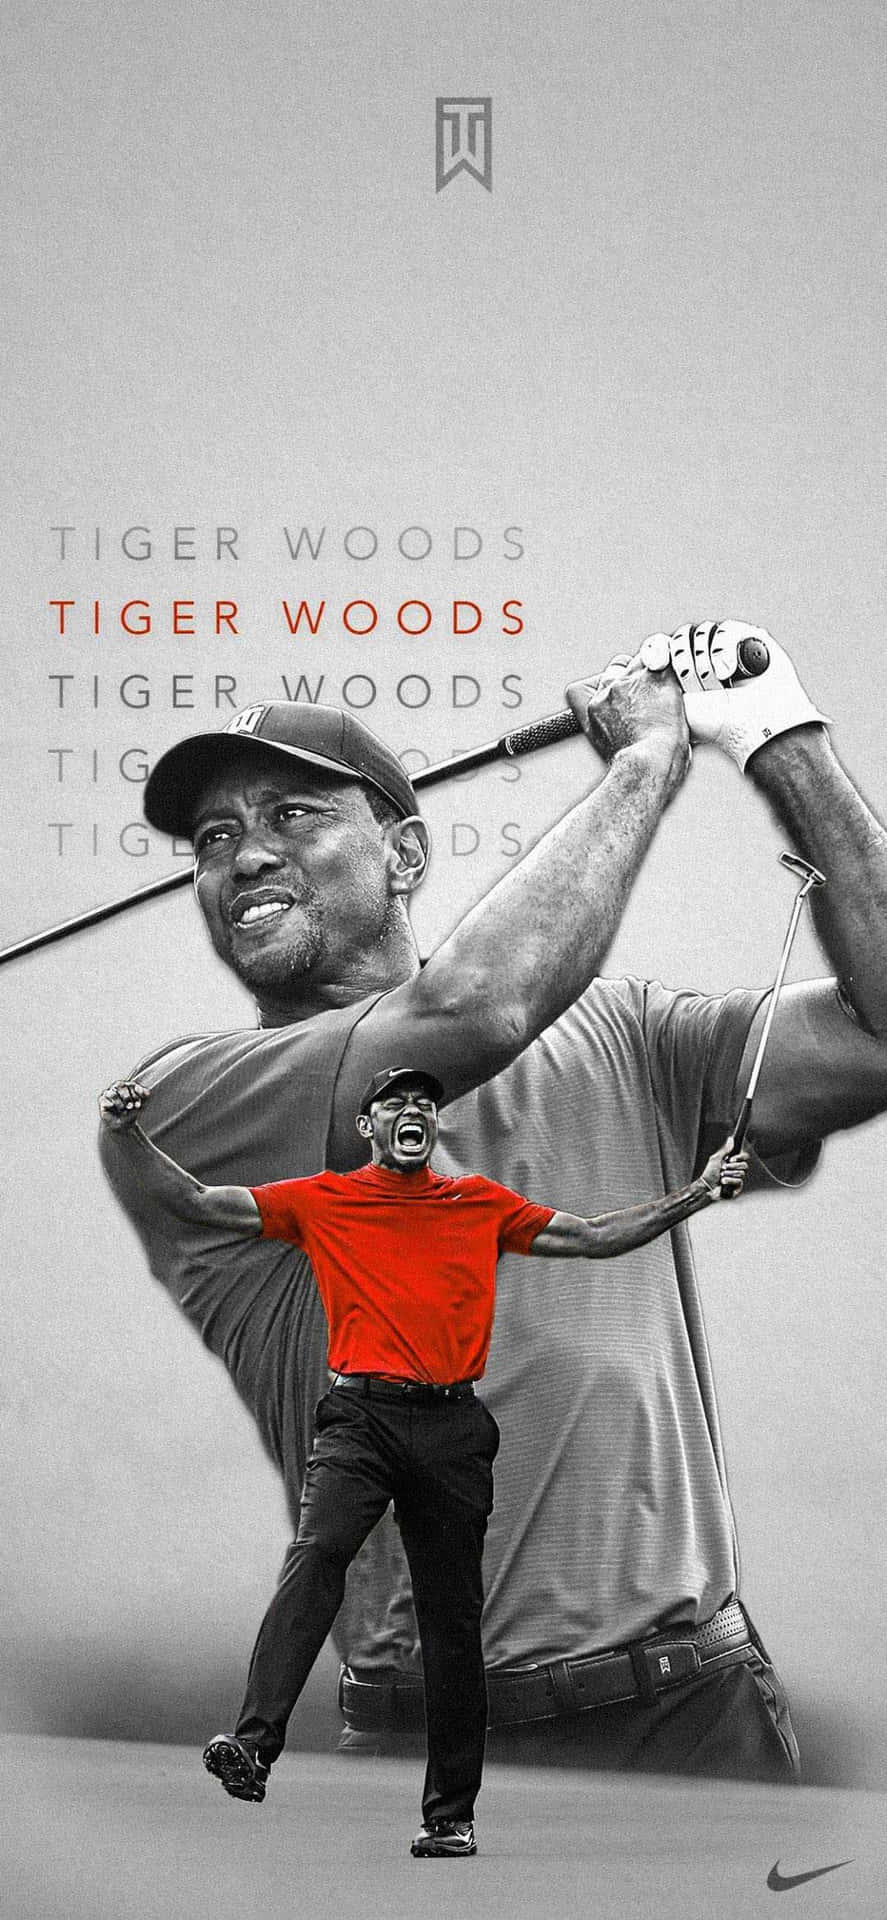 Professionel golfspiller Tiger Woods omfavner teknologi. Wallpaper